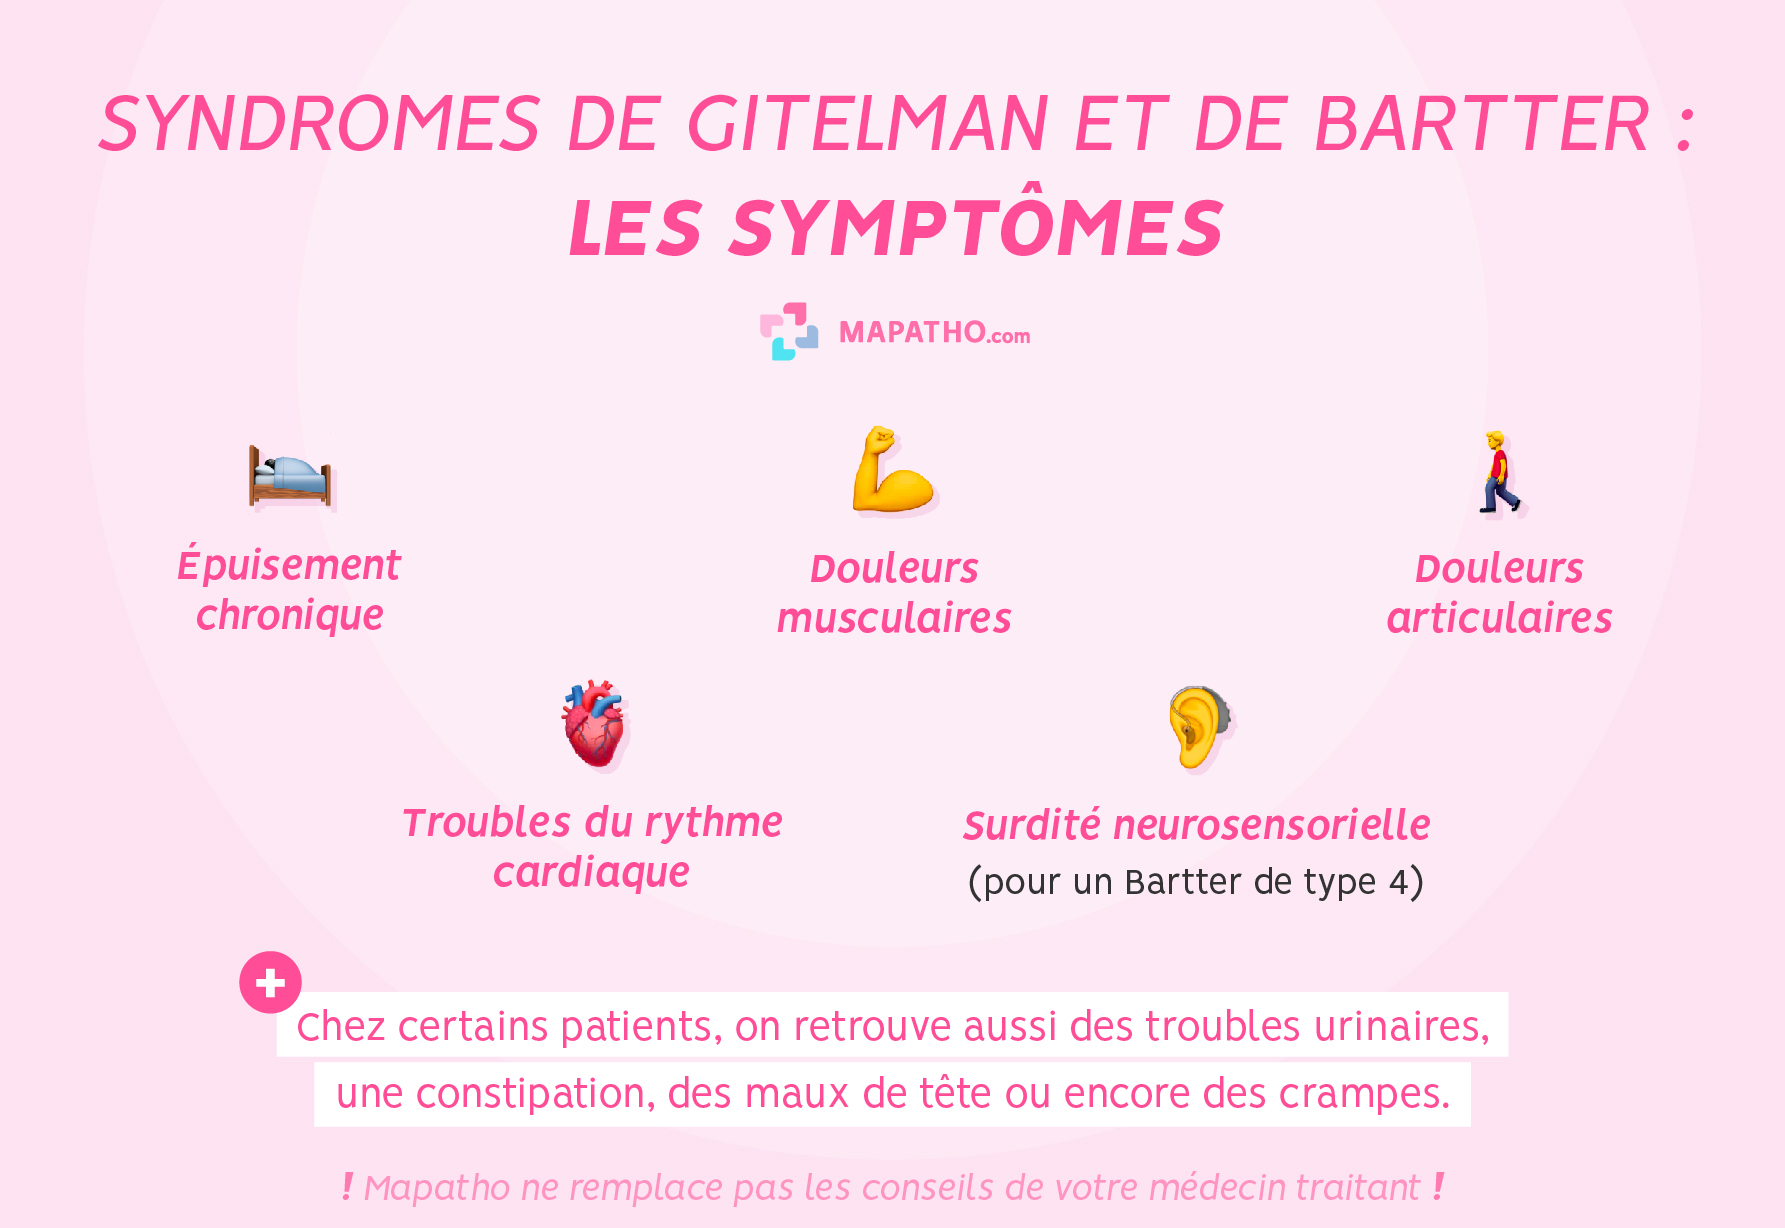 Les symptômes des syndromes de Gitelman et de Bartter